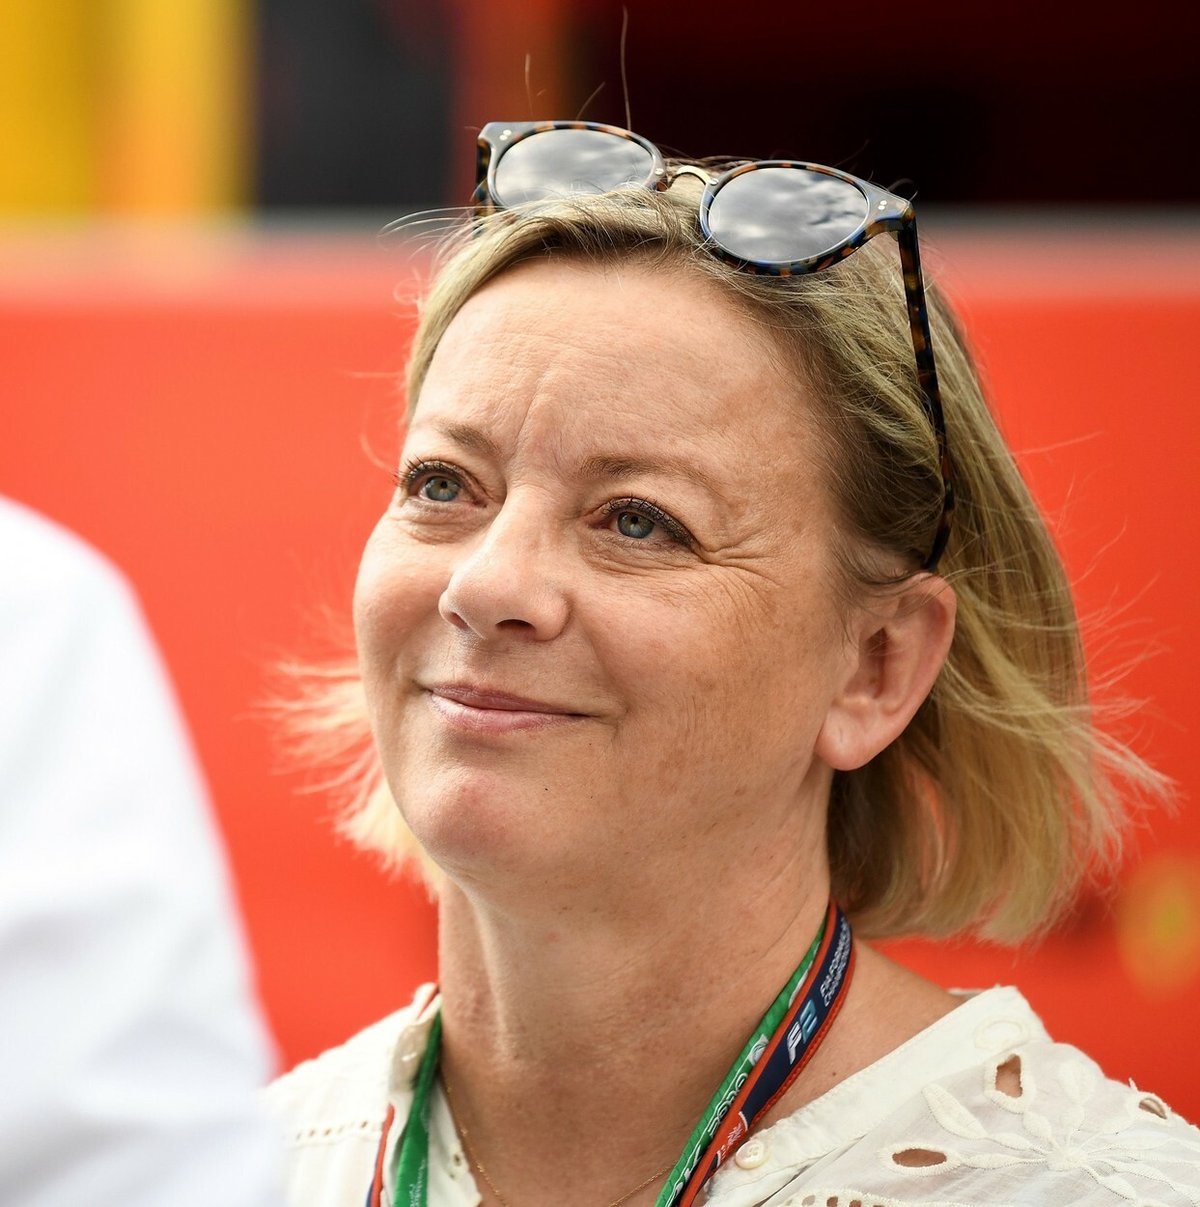 Sabine Kehmová, Schumacherova dlouholetá manažerka, nedávno promluvila ohledně legendárního jezdce